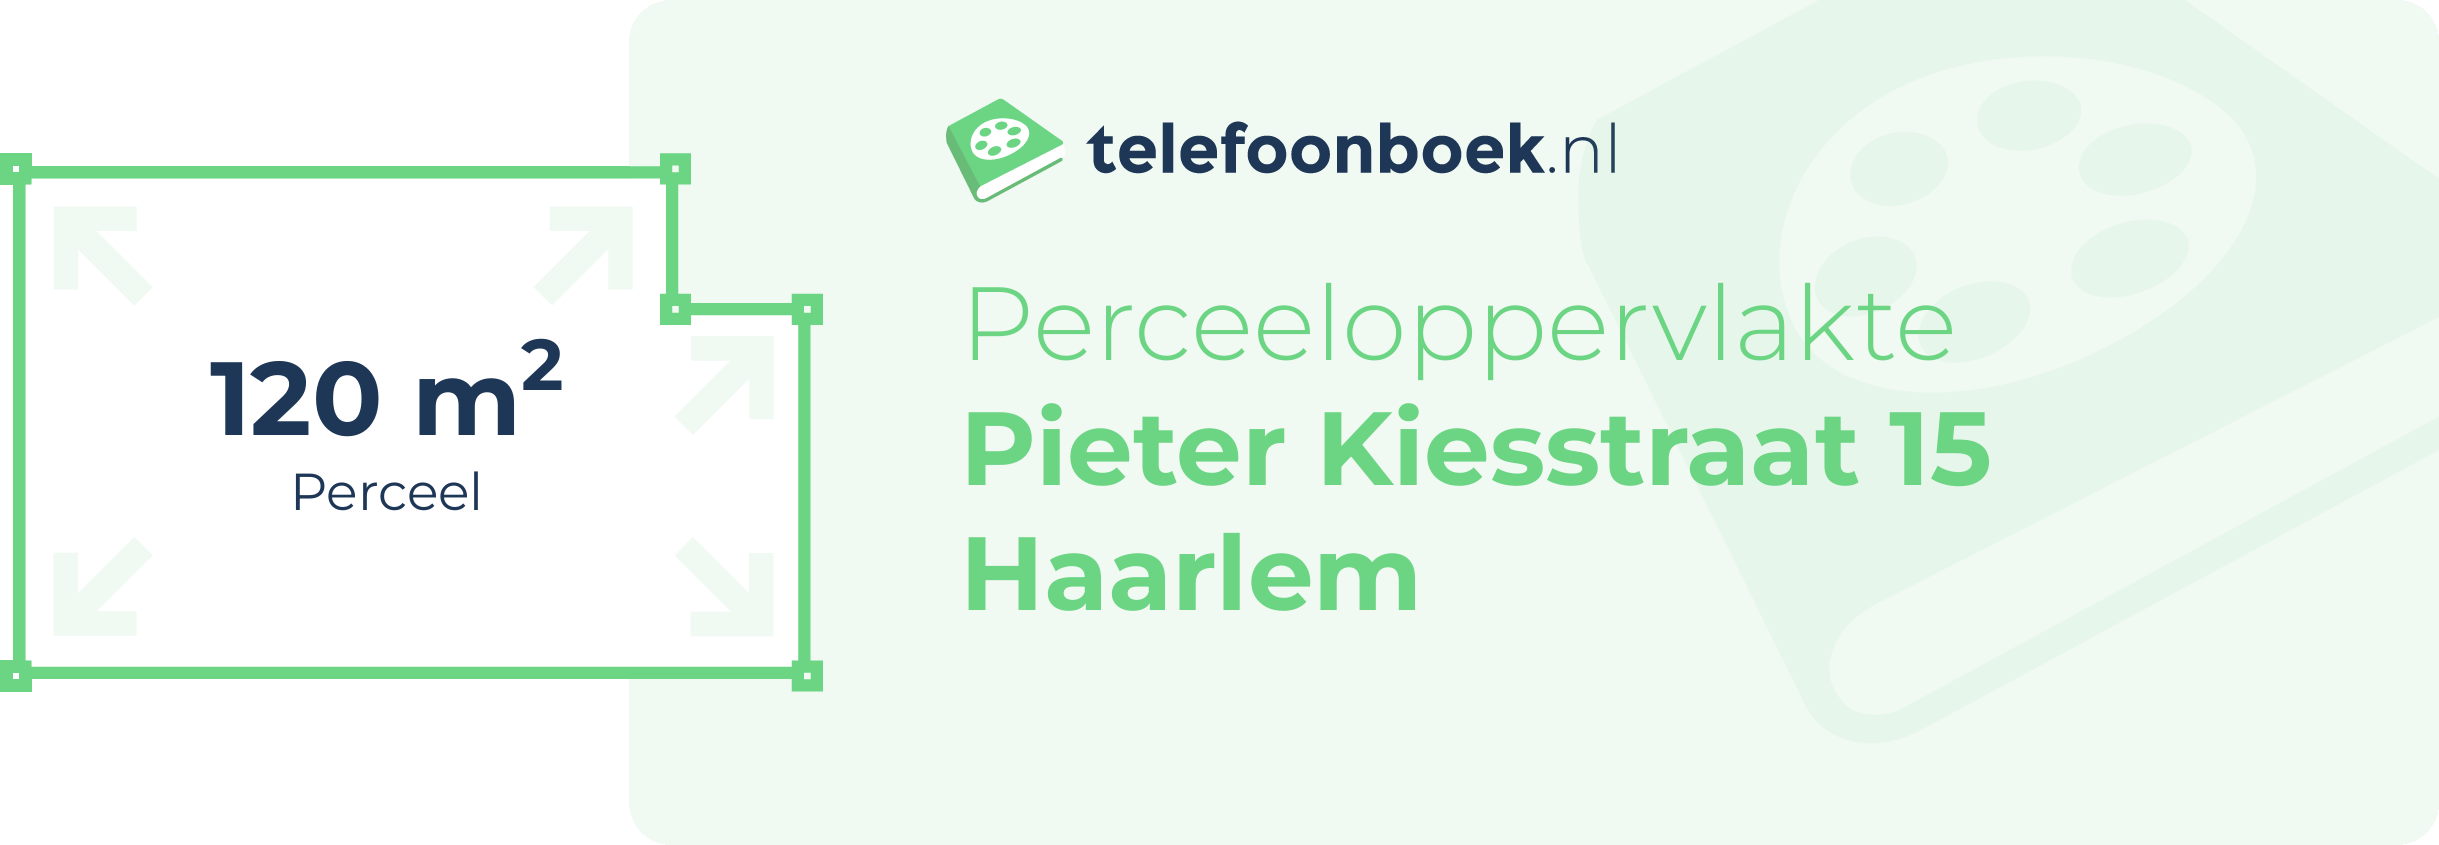 Perceeloppervlakte Pieter Kiesstraat 15 Haarlem